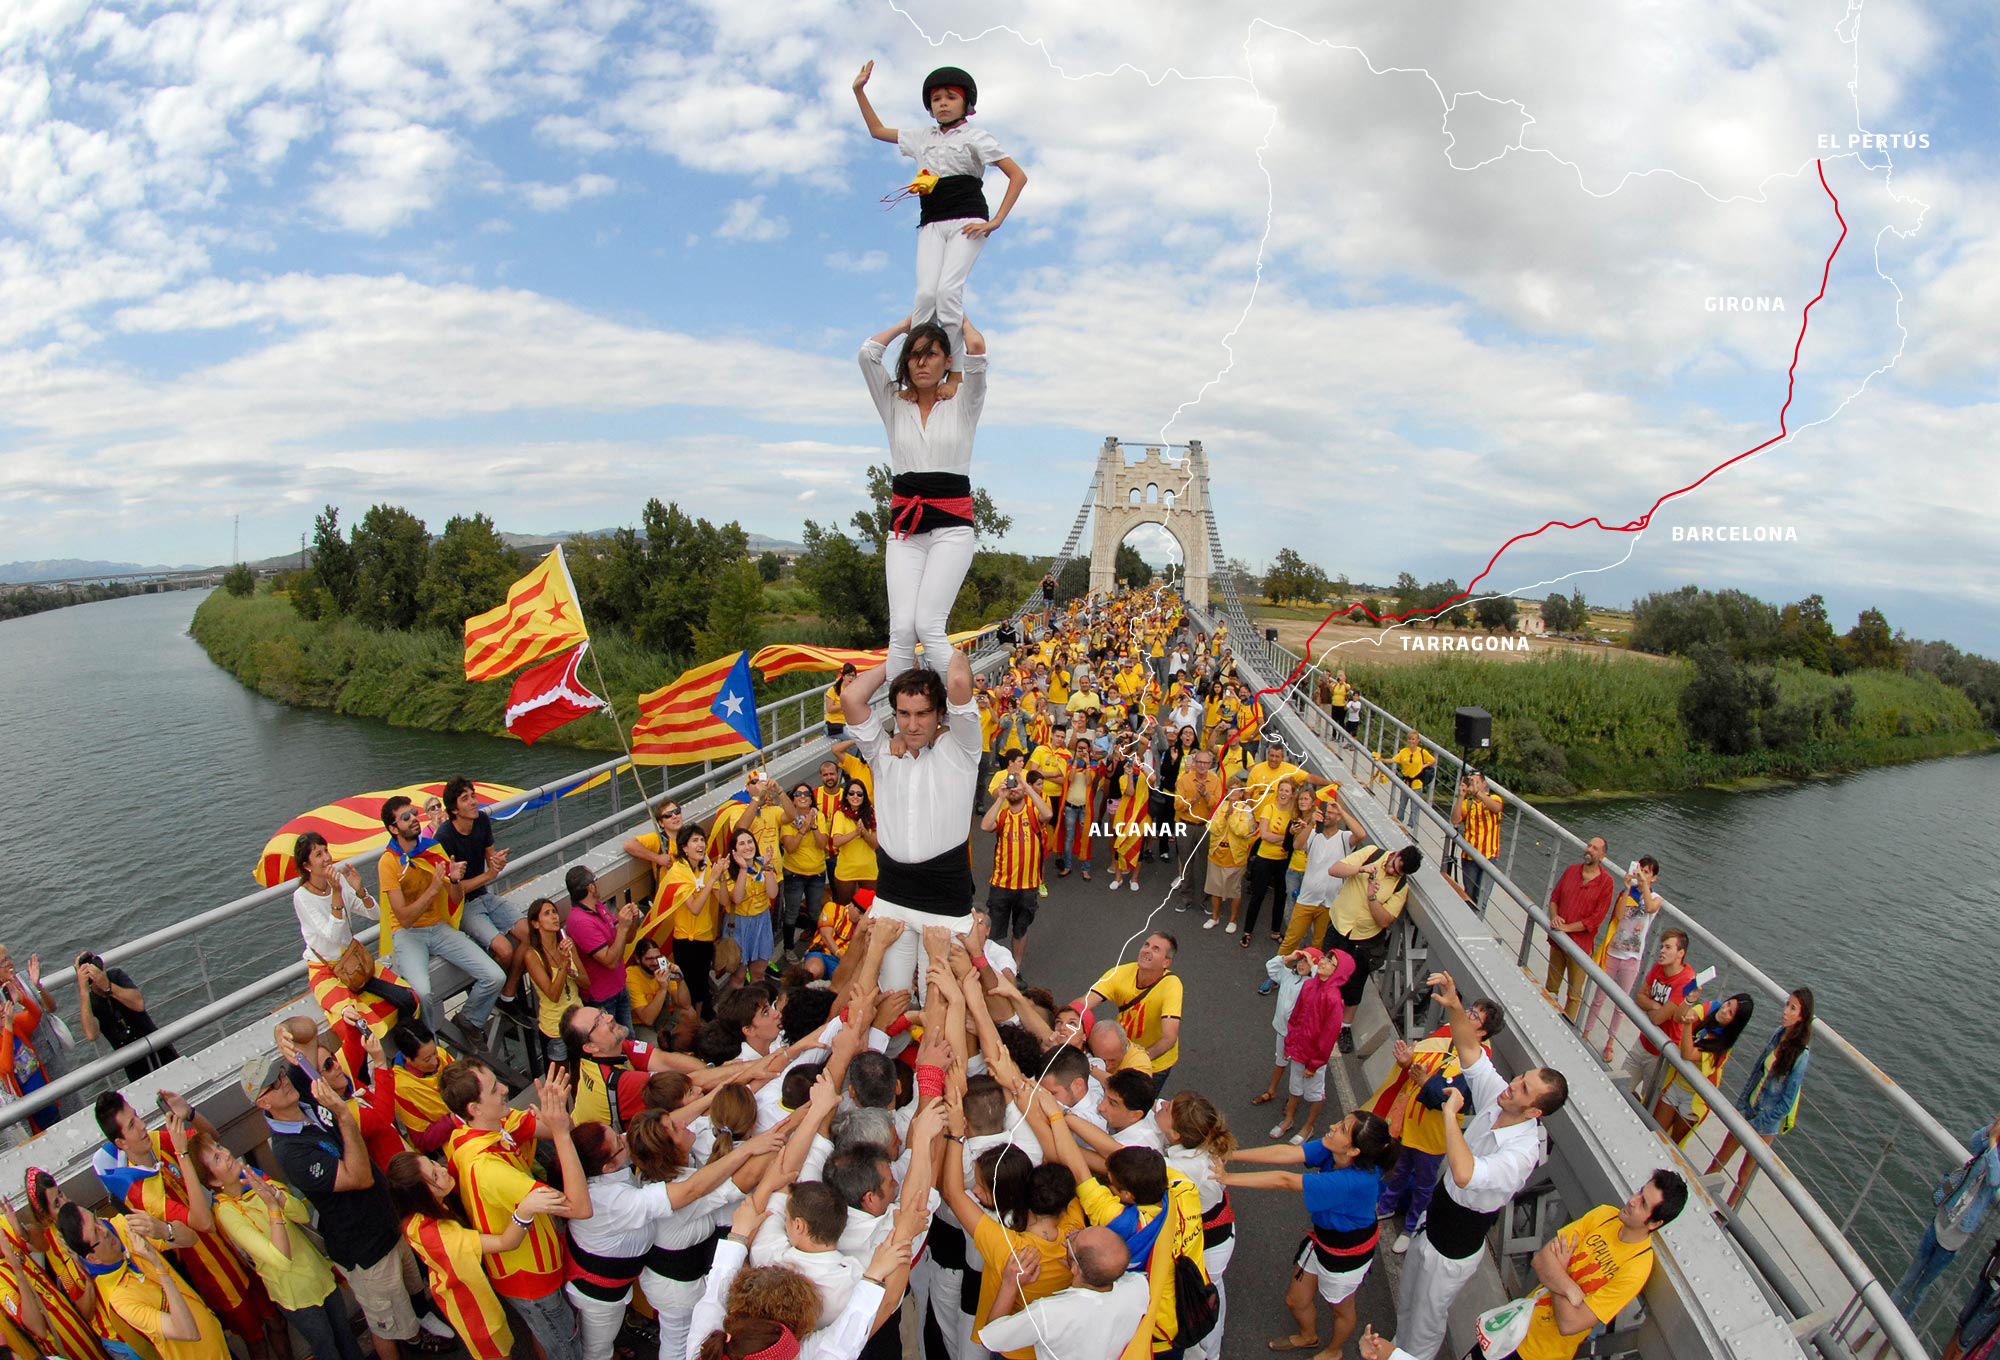 Le 11 septembre 2013, l’Assemblée Nationale Catalane, inspirée par l’exemple des pays baltes en 1989, a convoqué une gigantesque chaîne humaine du Nord au Sud du pays.